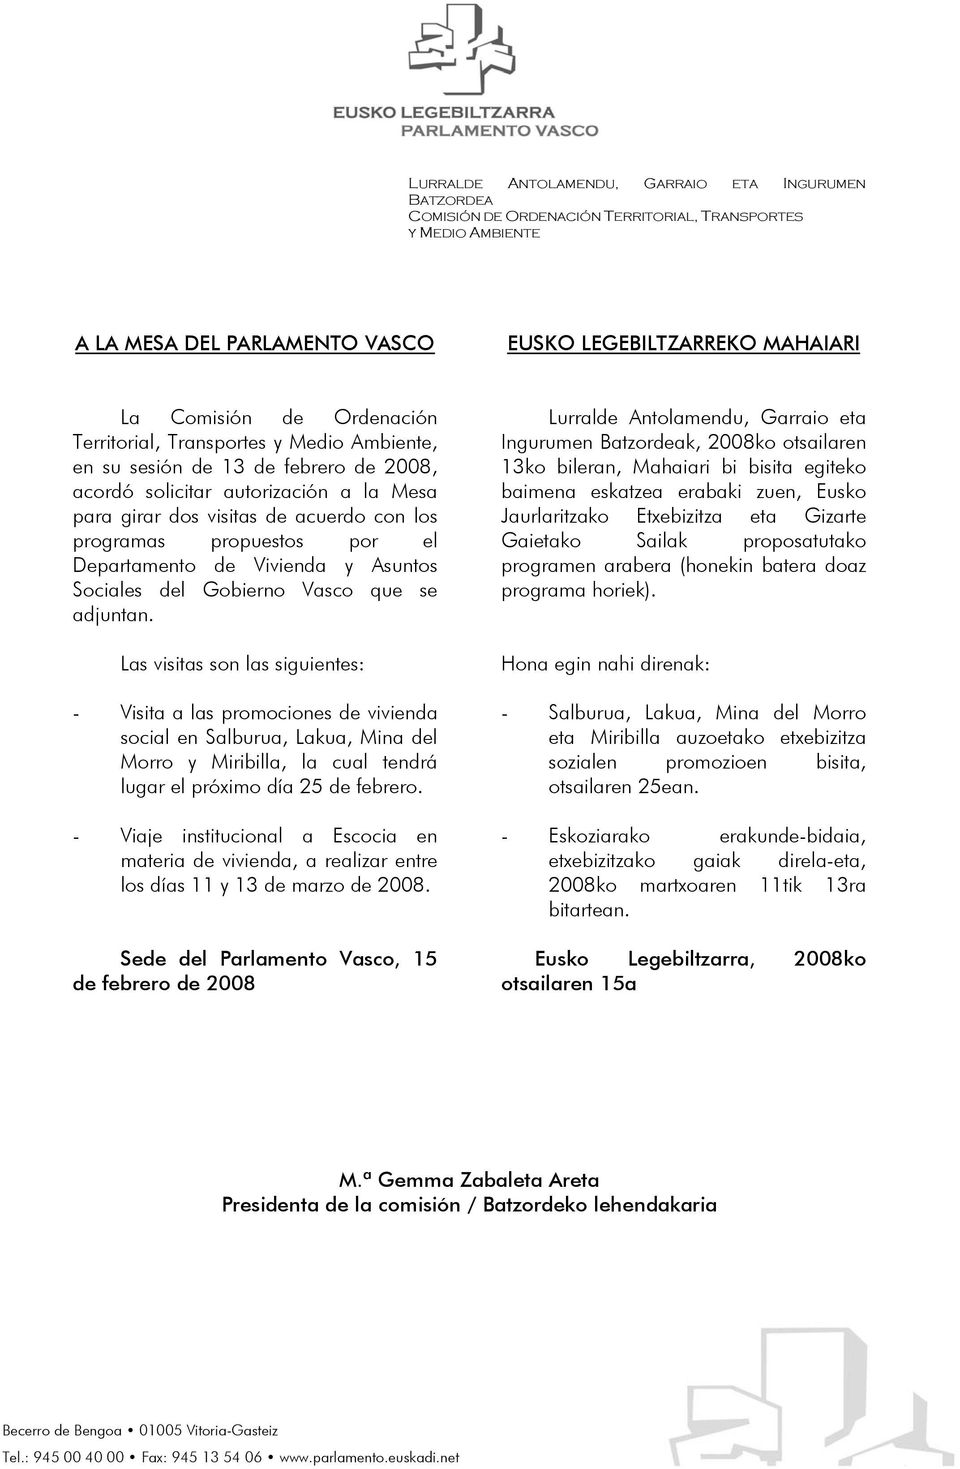 el Departamento de Vivienda y Asuntos Sociales del Gobierno Vasco que se adjuntan.